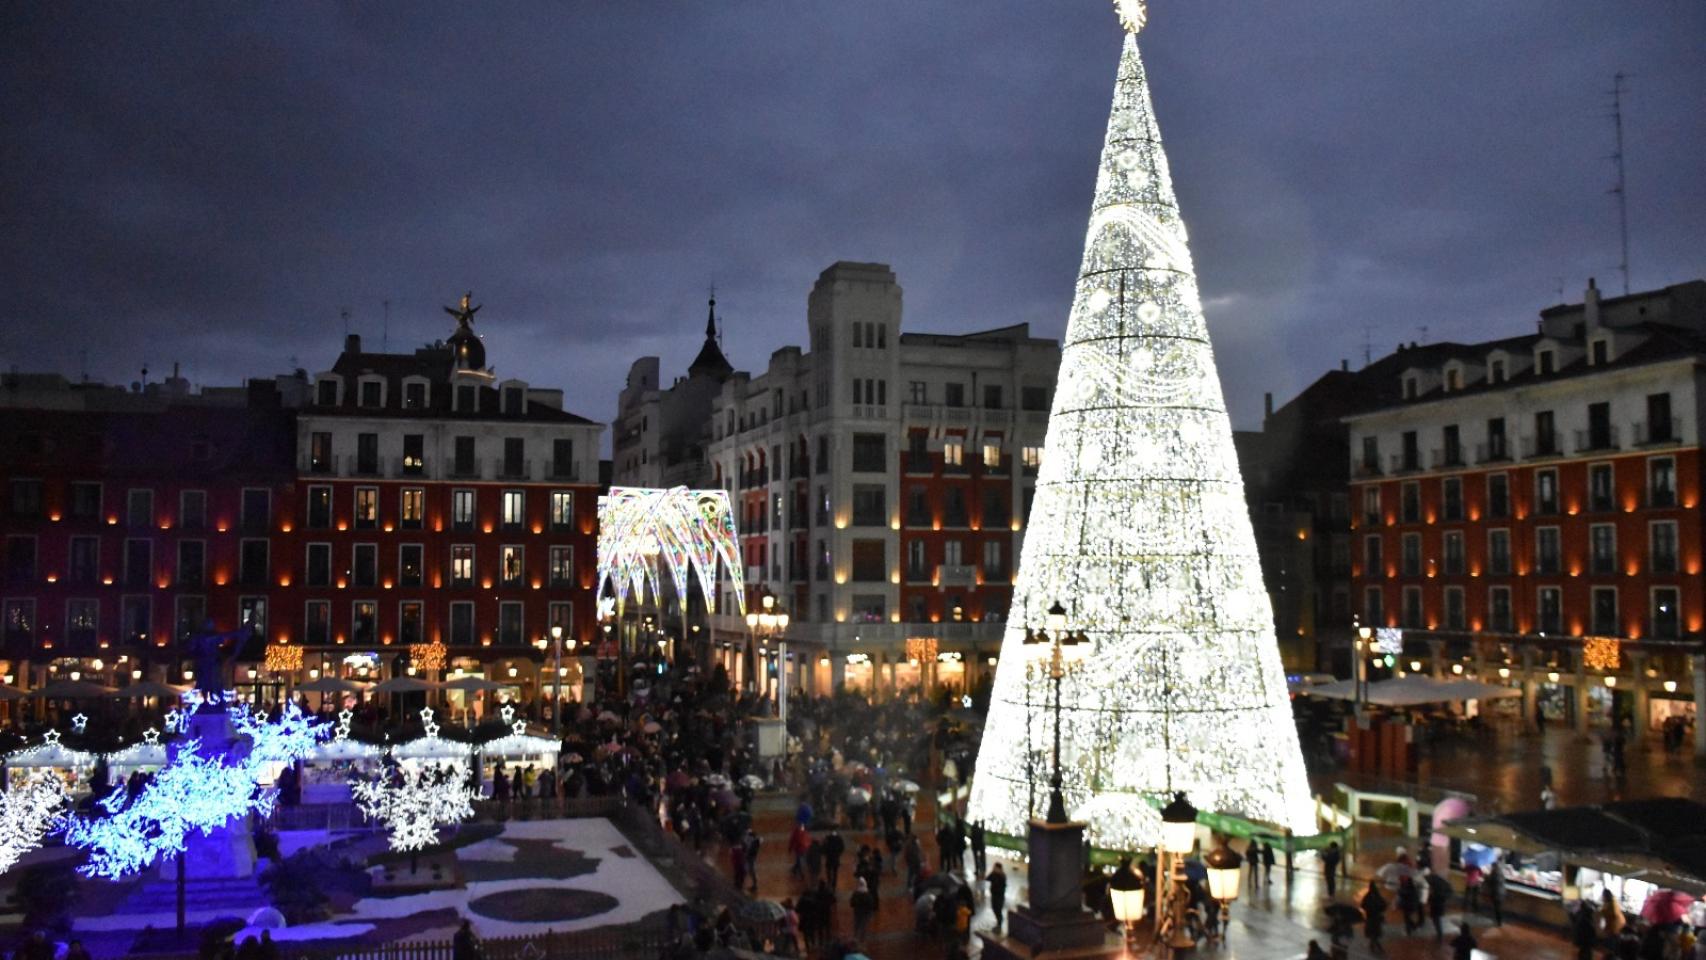 Iluminación navideña en Valladolid